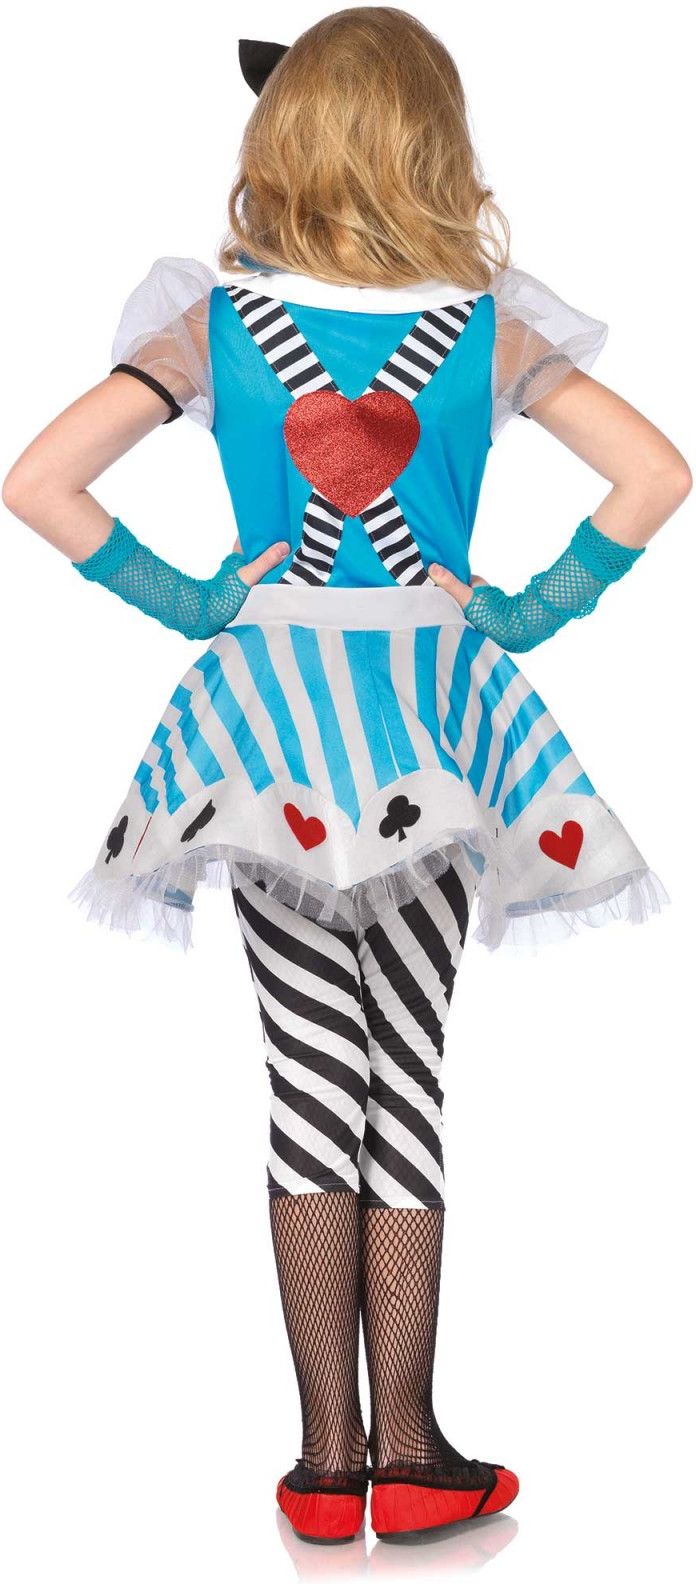 Alice in Wonderland pakje kind